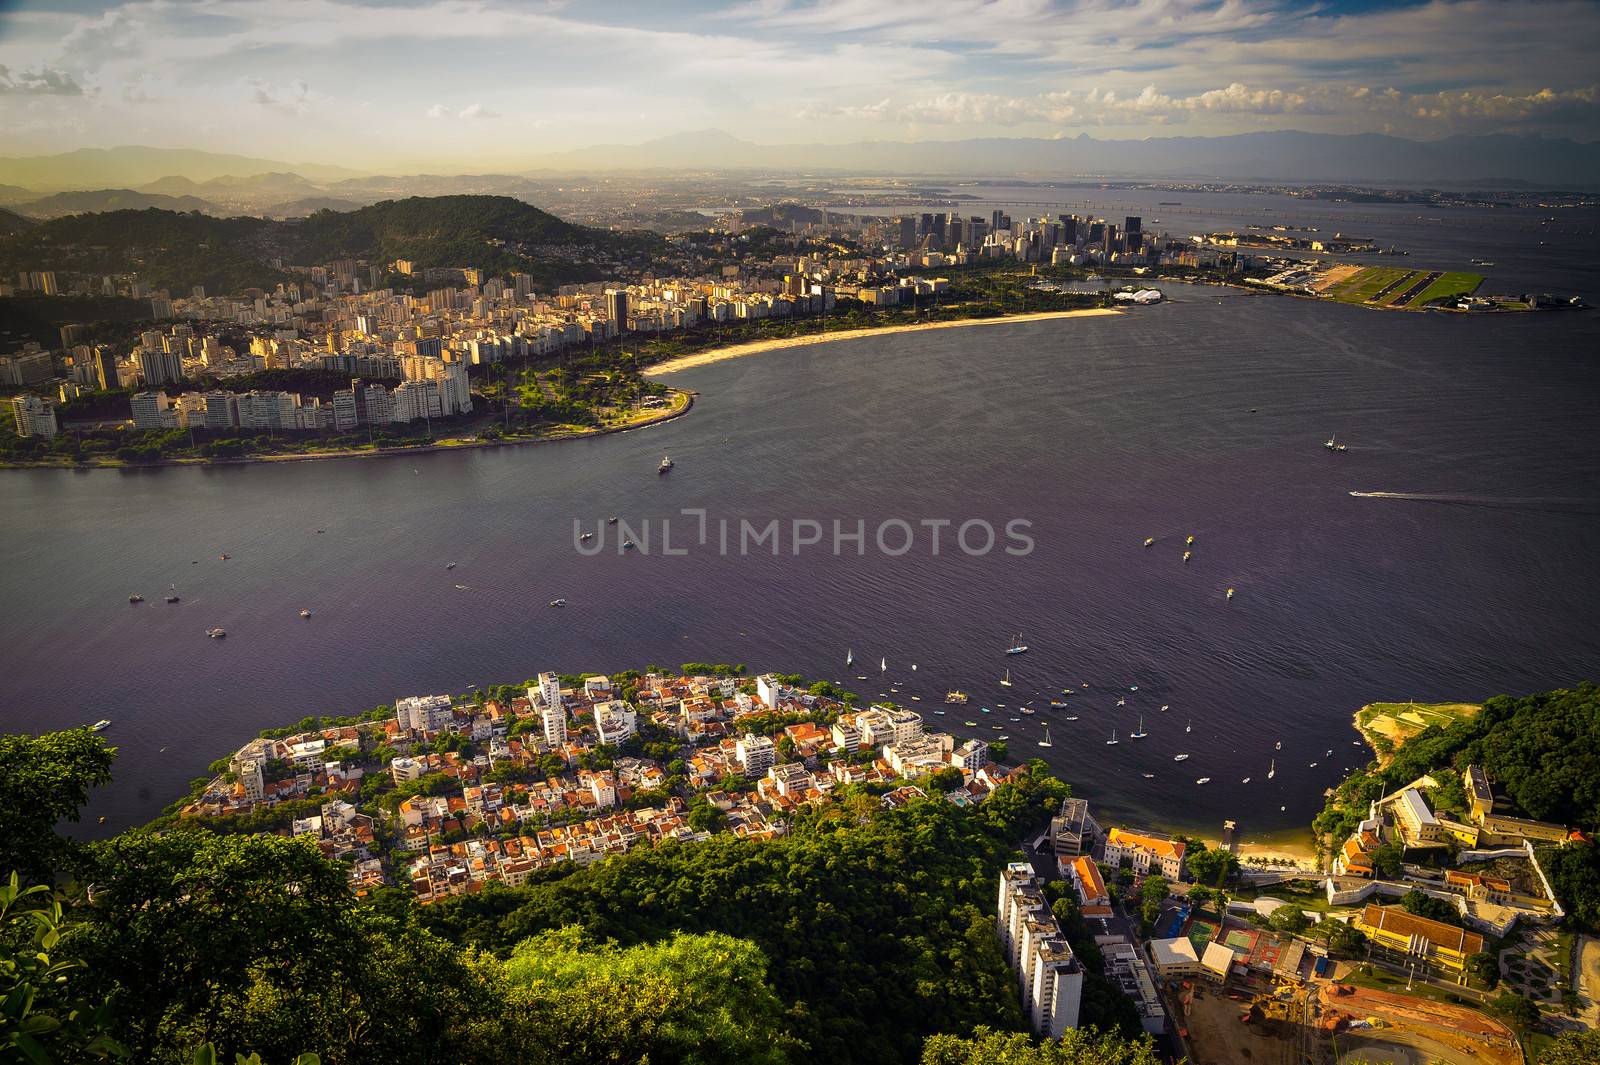 Aterro do Flamengo, Rio de Janeiro, Brazil